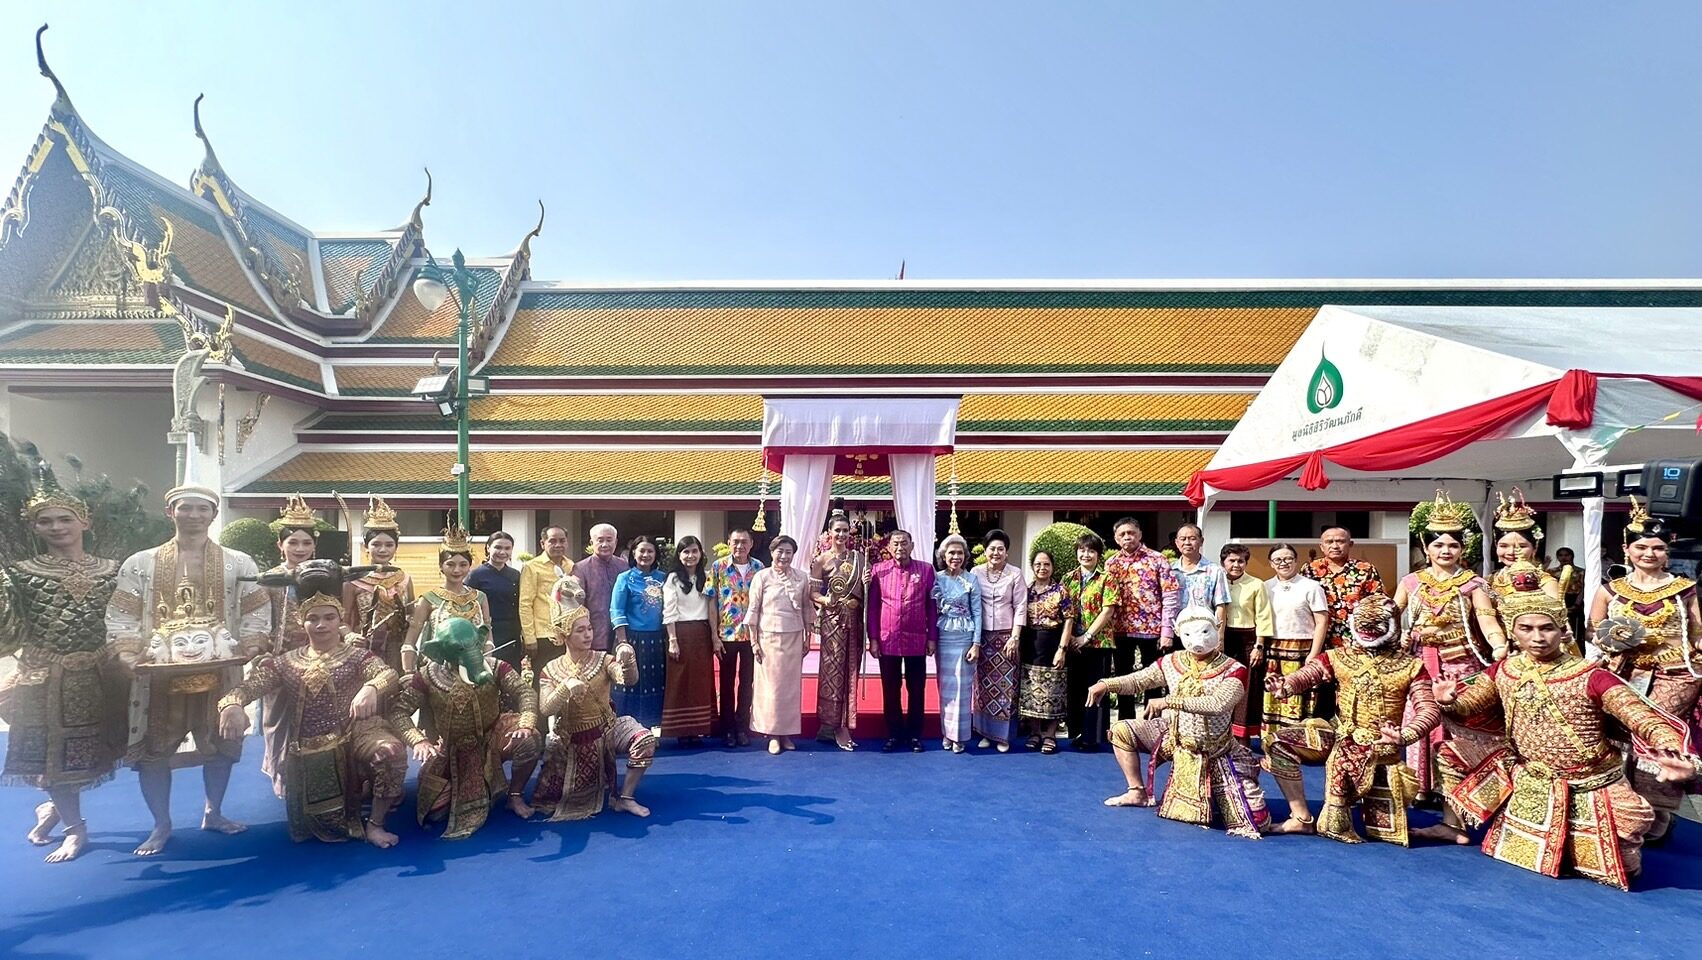 ‘เสริมศักดิ์’ เปิดงานประเพณีสงกรานต์ปีใหม่ไทย ผลักดันเป็น ‘เมืองแห่งเทศกาลโลก’ ชวน ปชช.สวมเสื้อลายดอก เที่ยวทั่วไทย